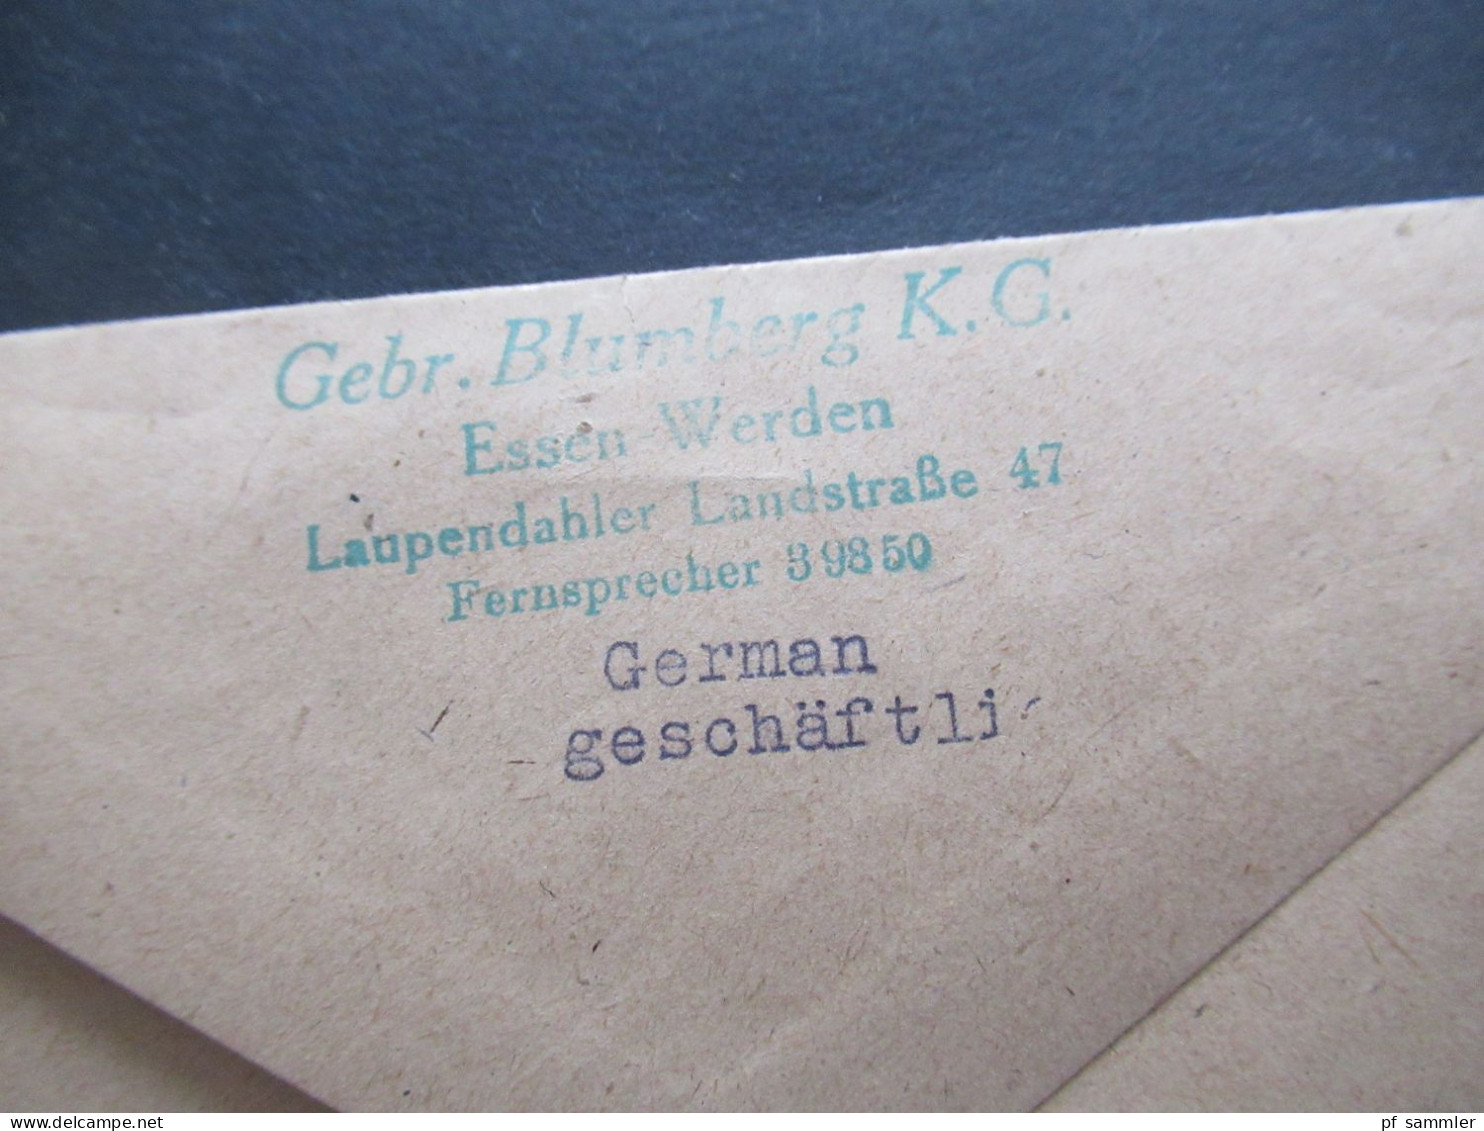 1945 / 46 Bizone Am Post Nr.1 EF Violetter Notstempel L2 Postamt Essen - Werden / Laupendahler Landstraße 47 - Covers & Documents